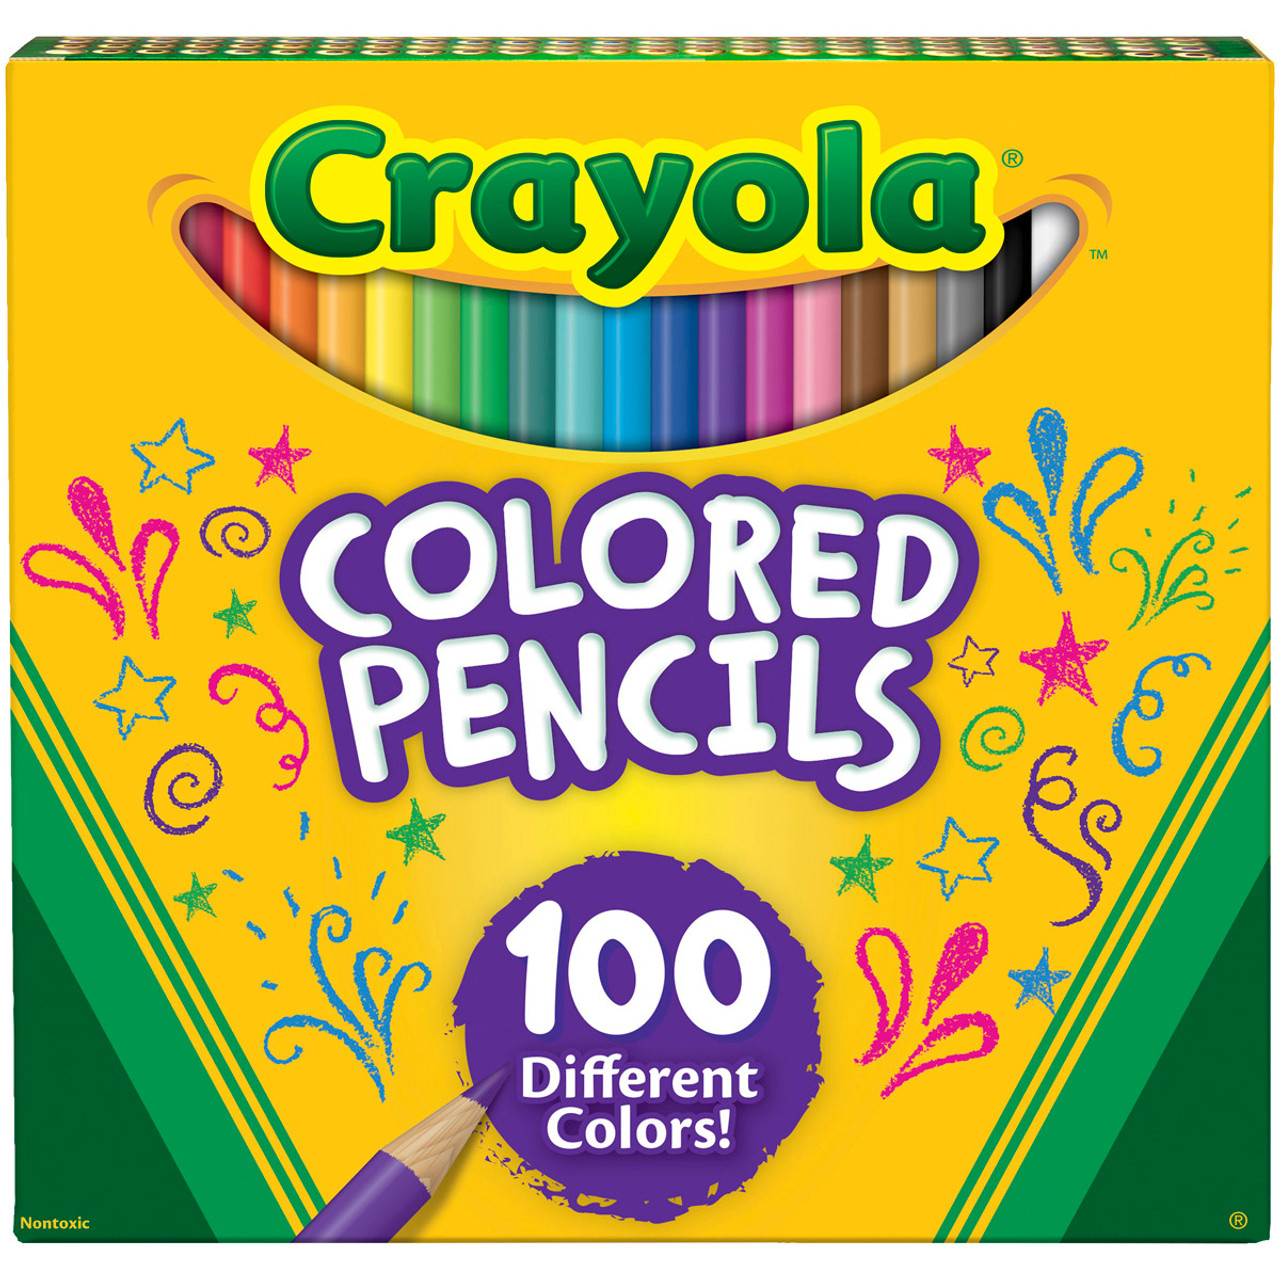 Crayola Erasable Colored Pencils-24/Pkg Long 68-2424 - GettyCrafts